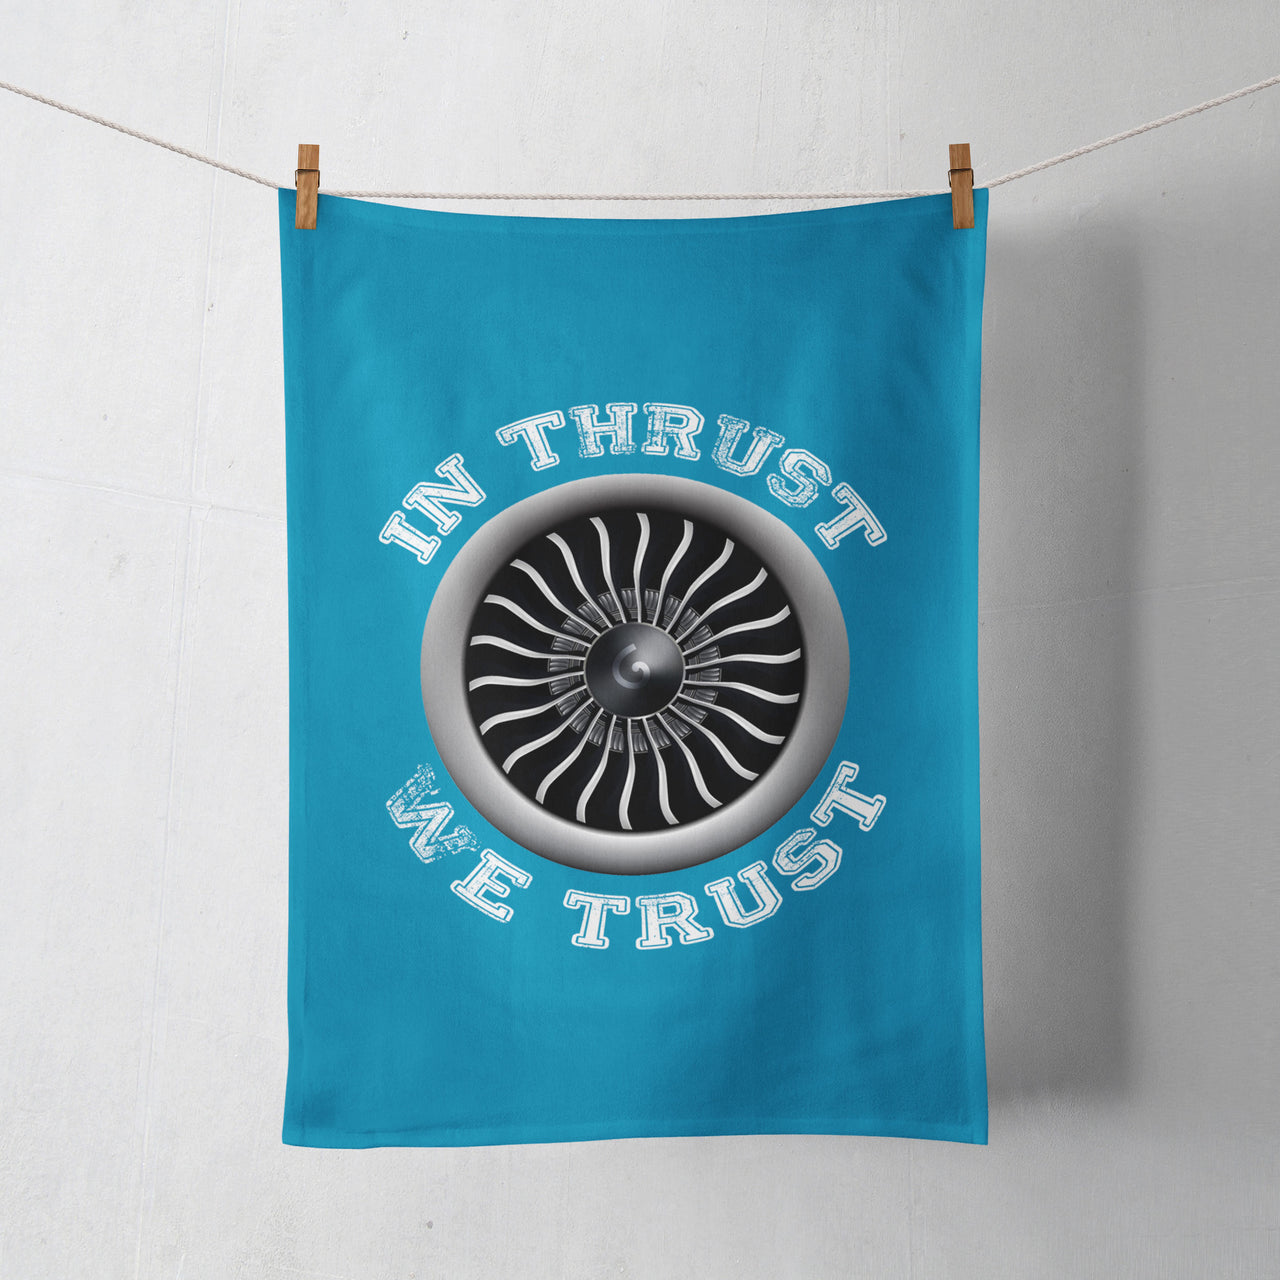 In Thrust We Trust (Vol 2) Designed Towels